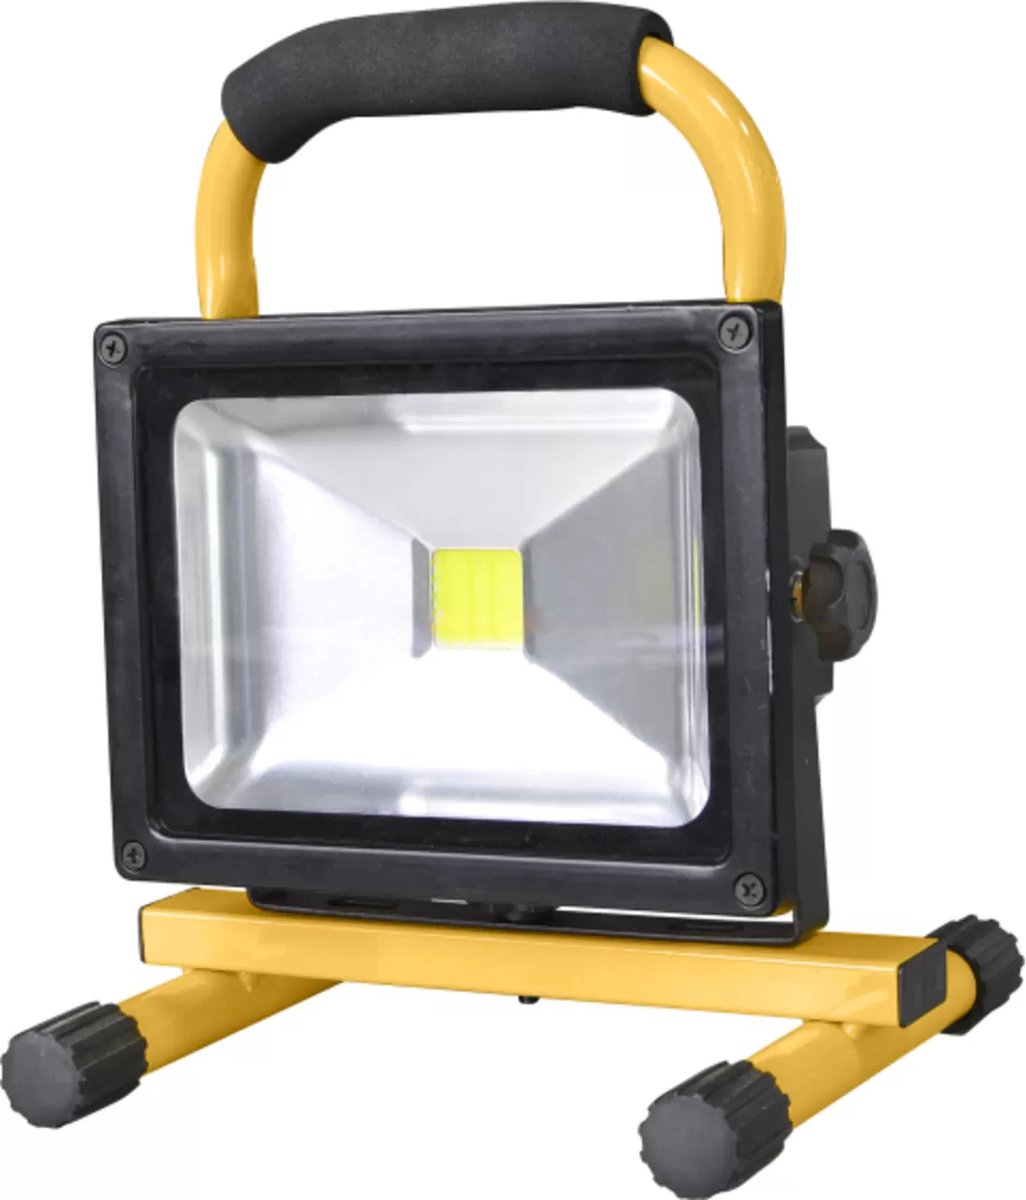 Lampe de travail à LED PWLS 05-10 - TROTEC